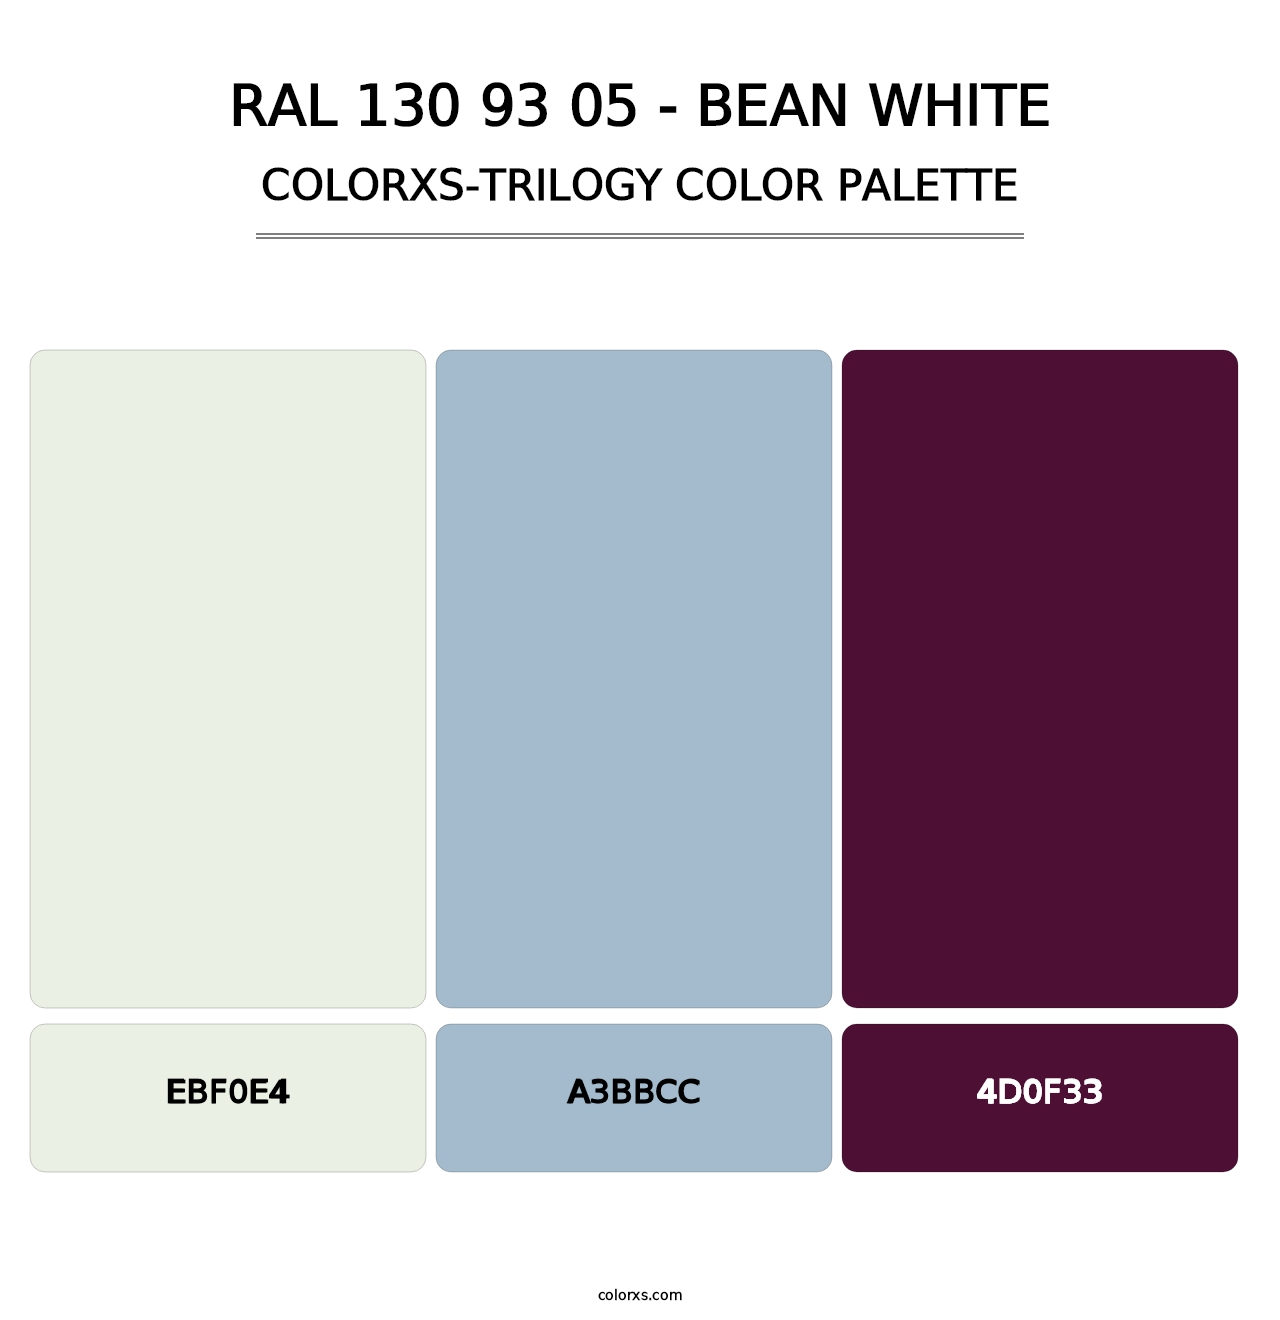 RAL 130 93 05 - Bean White - Colorxs Trilogy Palette